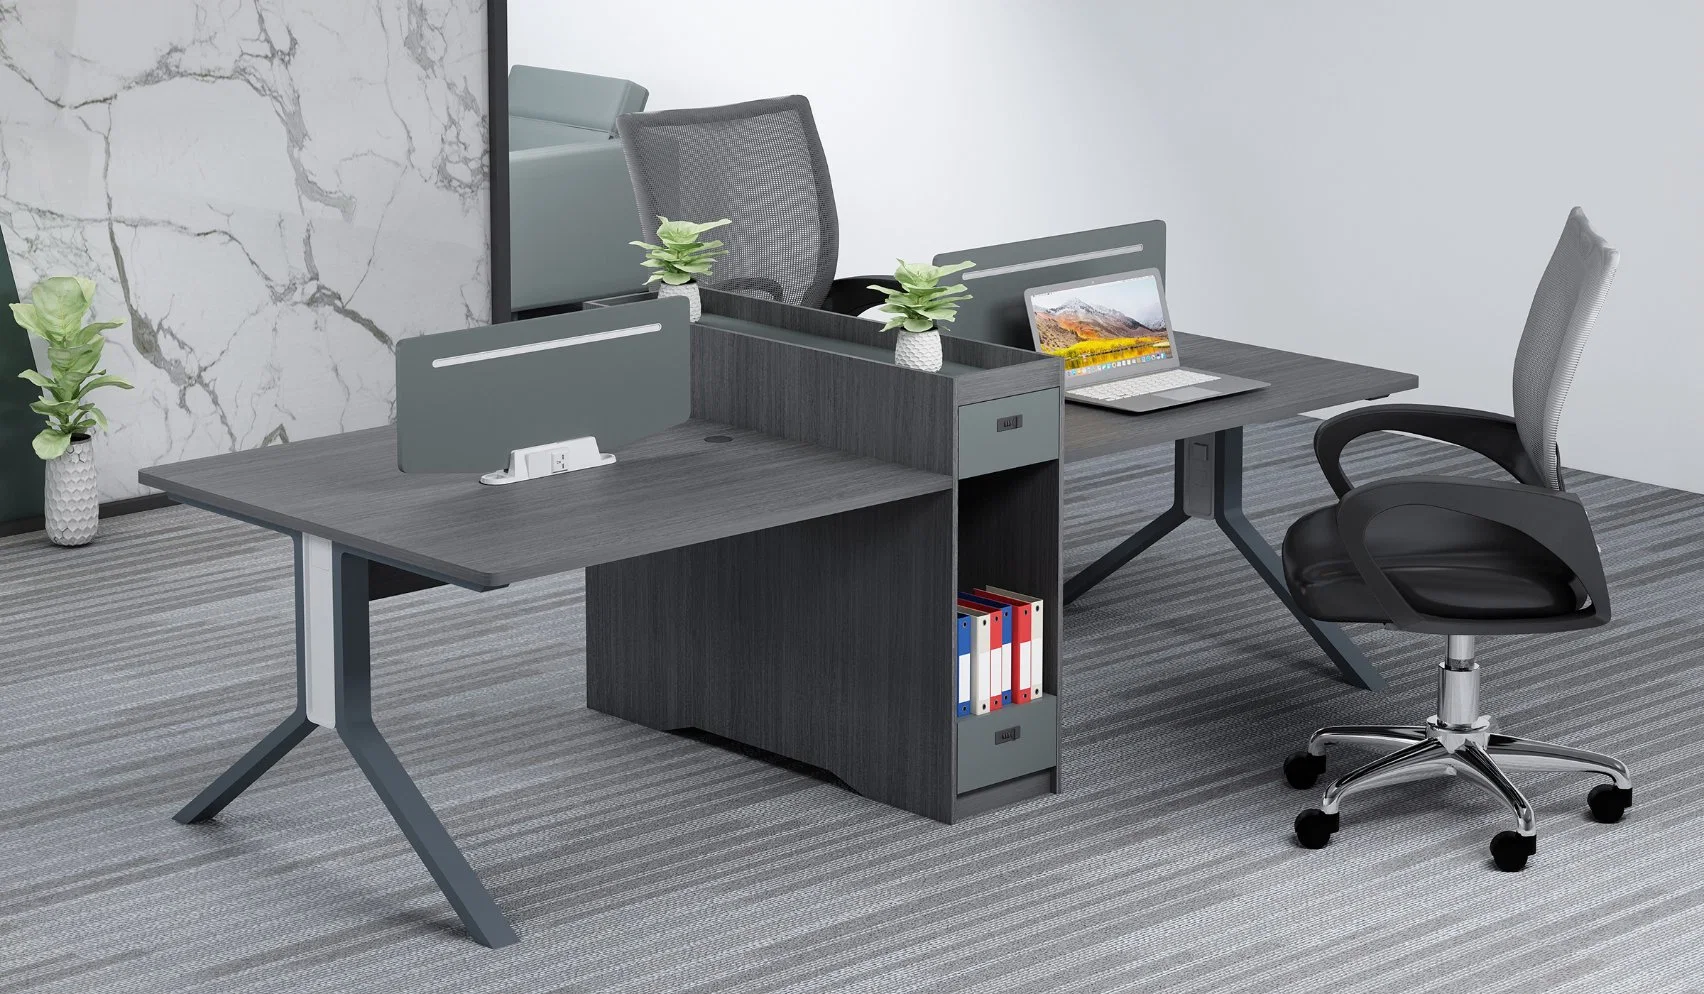 Nuevo Diseño moderno Mobiliario de Oficina MDF Moda de madera 2-4 asientos Estación de trabajo